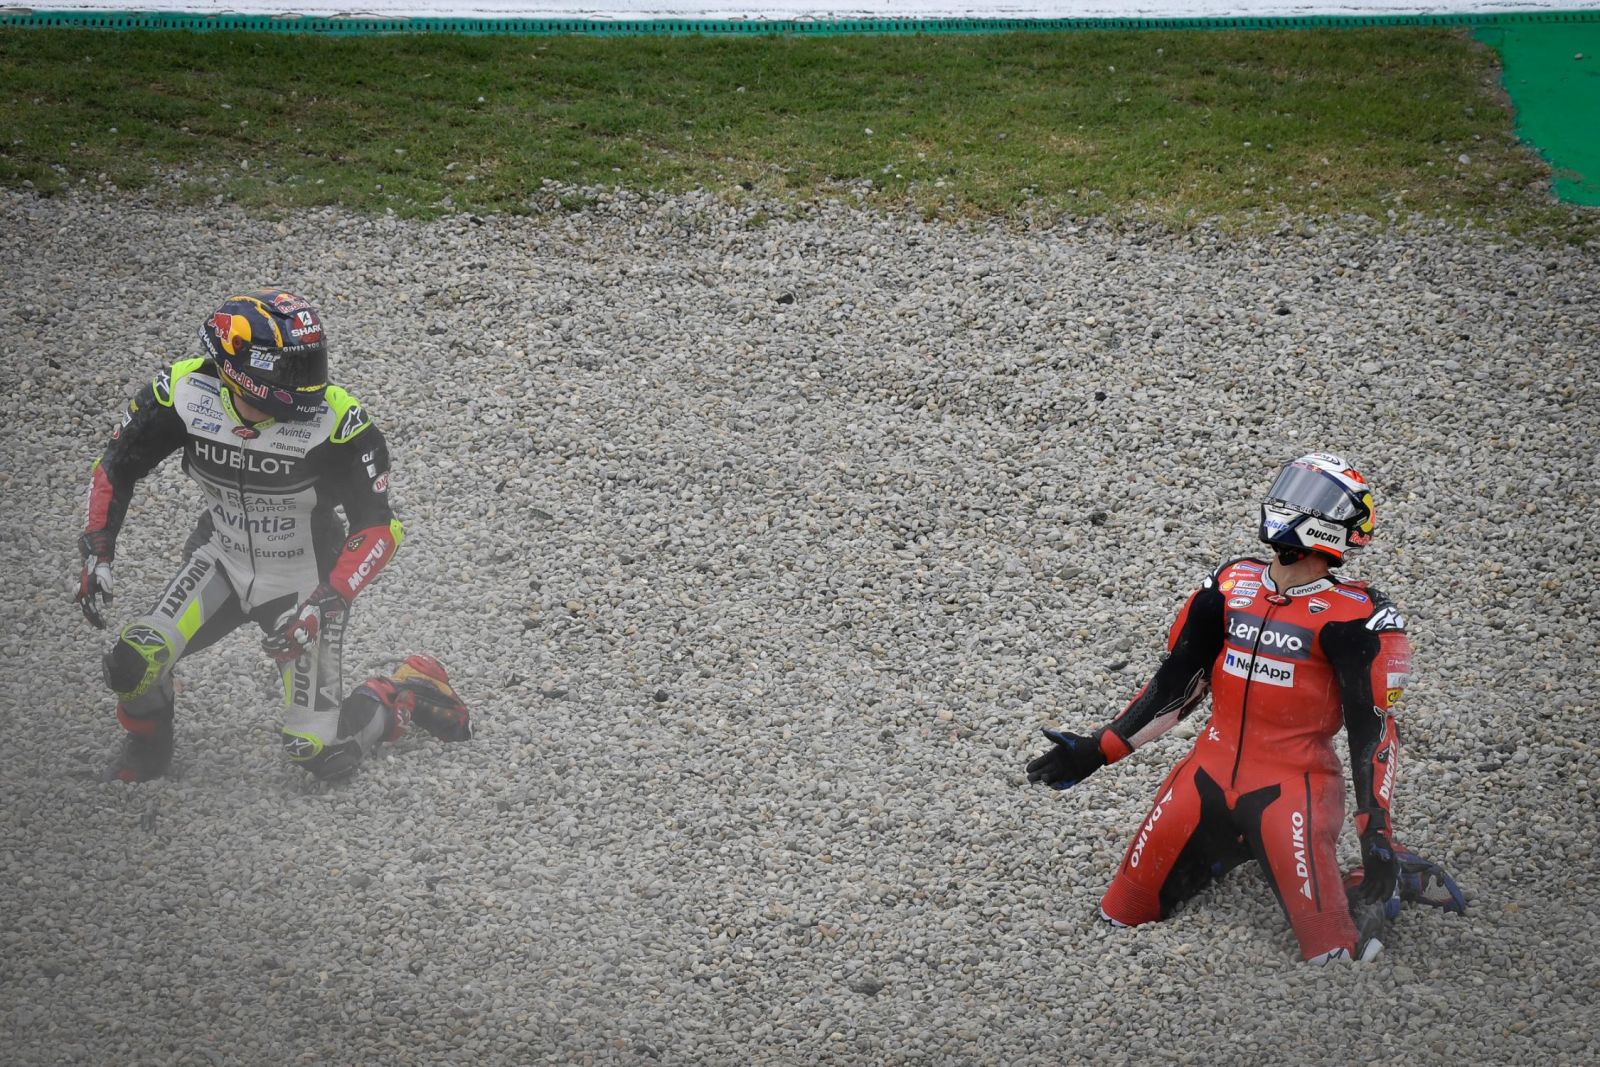 Ducatis down! Dovi and Zarco’s Catalunya Crash